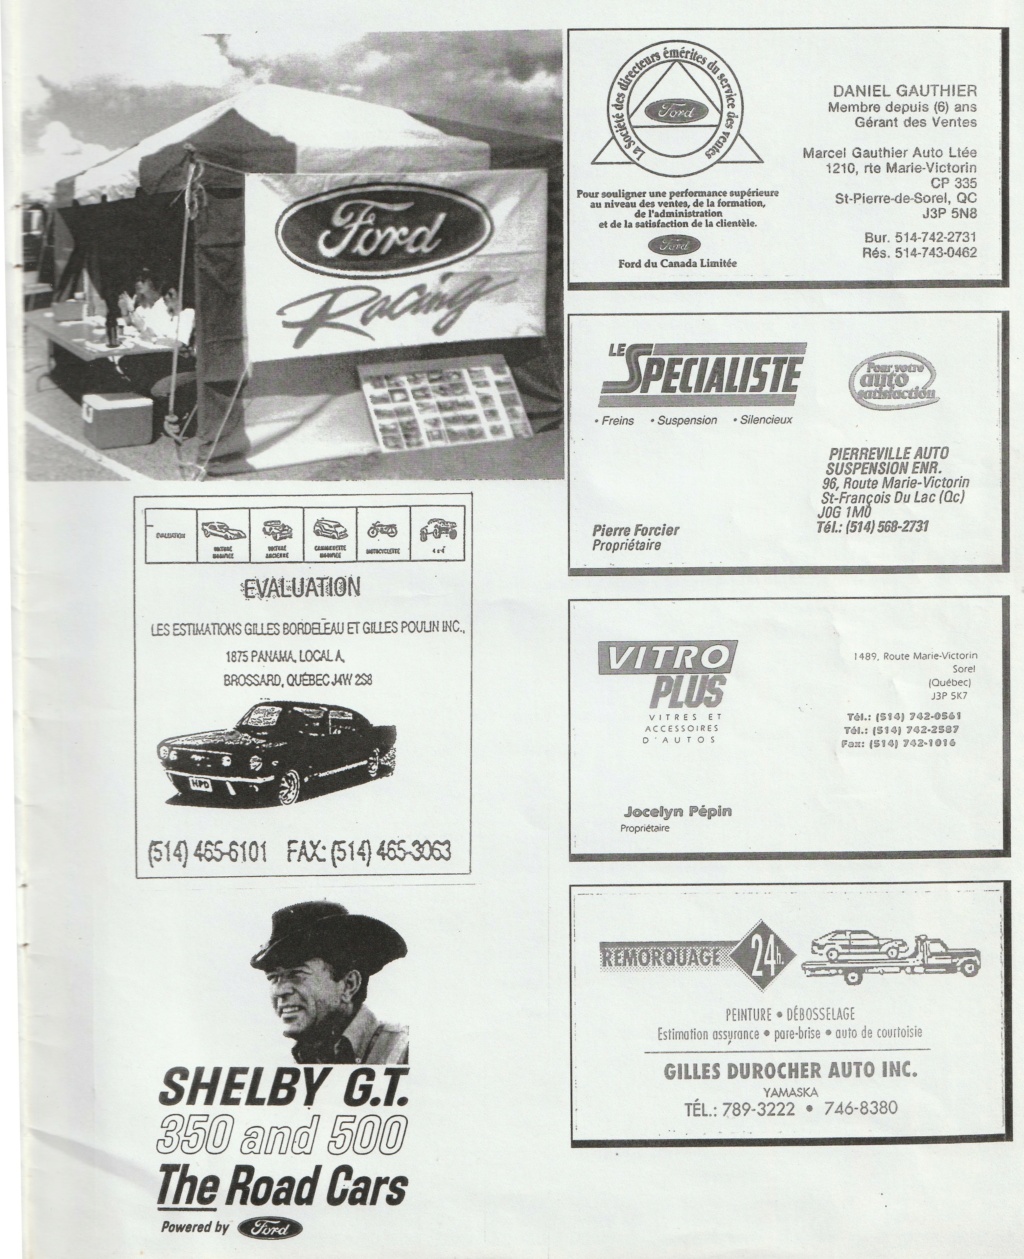 Montréal Mustang dans le temps! 1981 à aujourd'hui (Histoire en photos) - Page 8 Img_2365